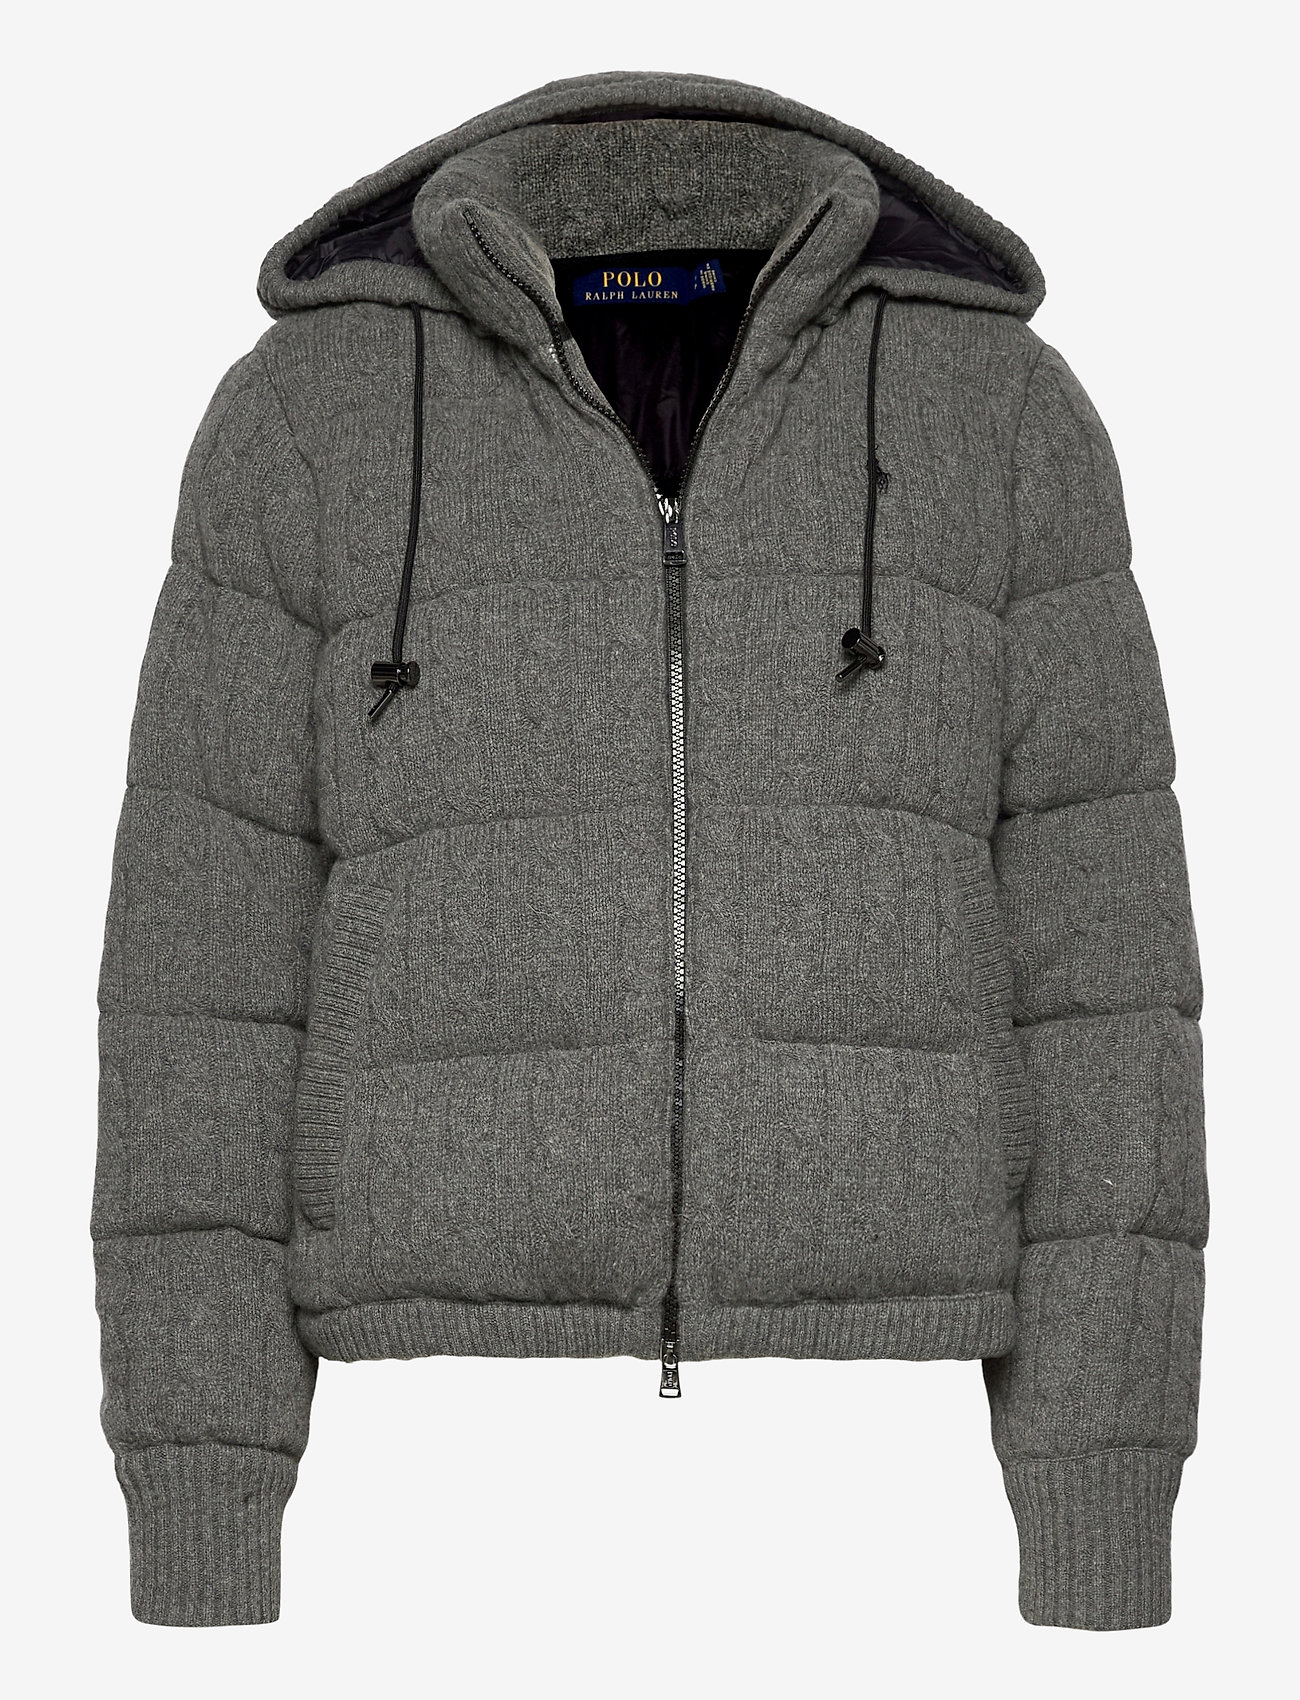 polo gray jacket